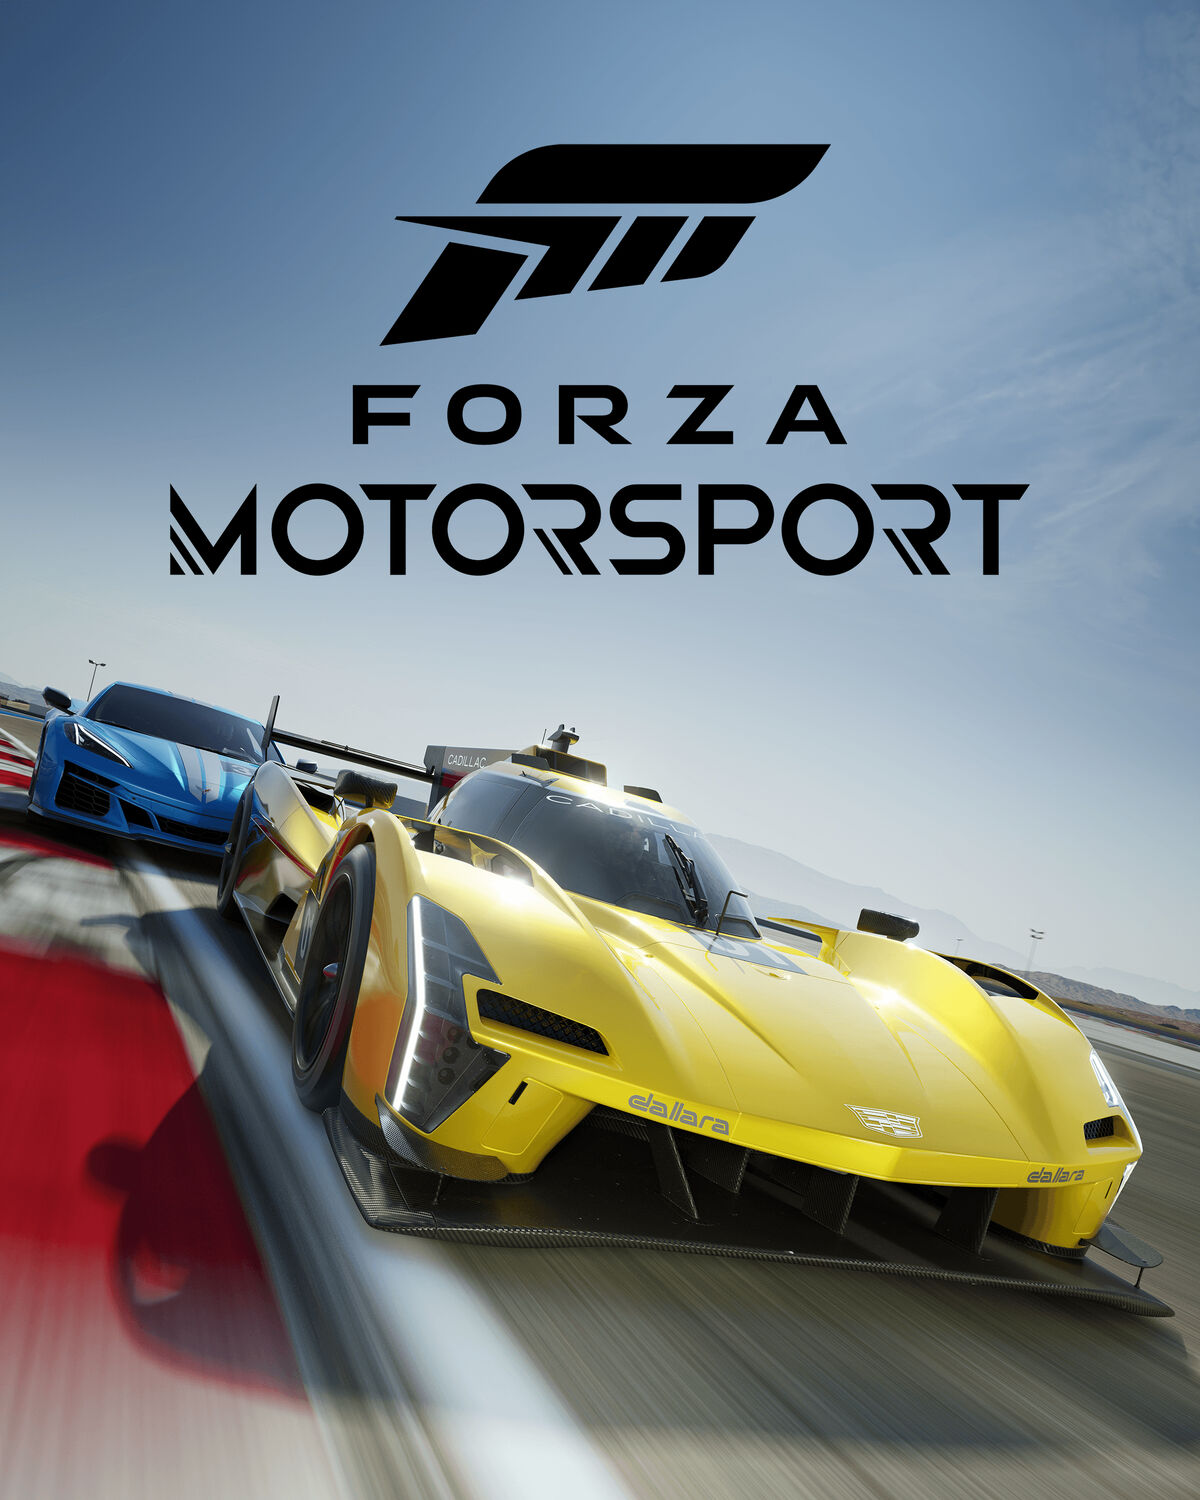 Forza Horizon, Forza Wiki